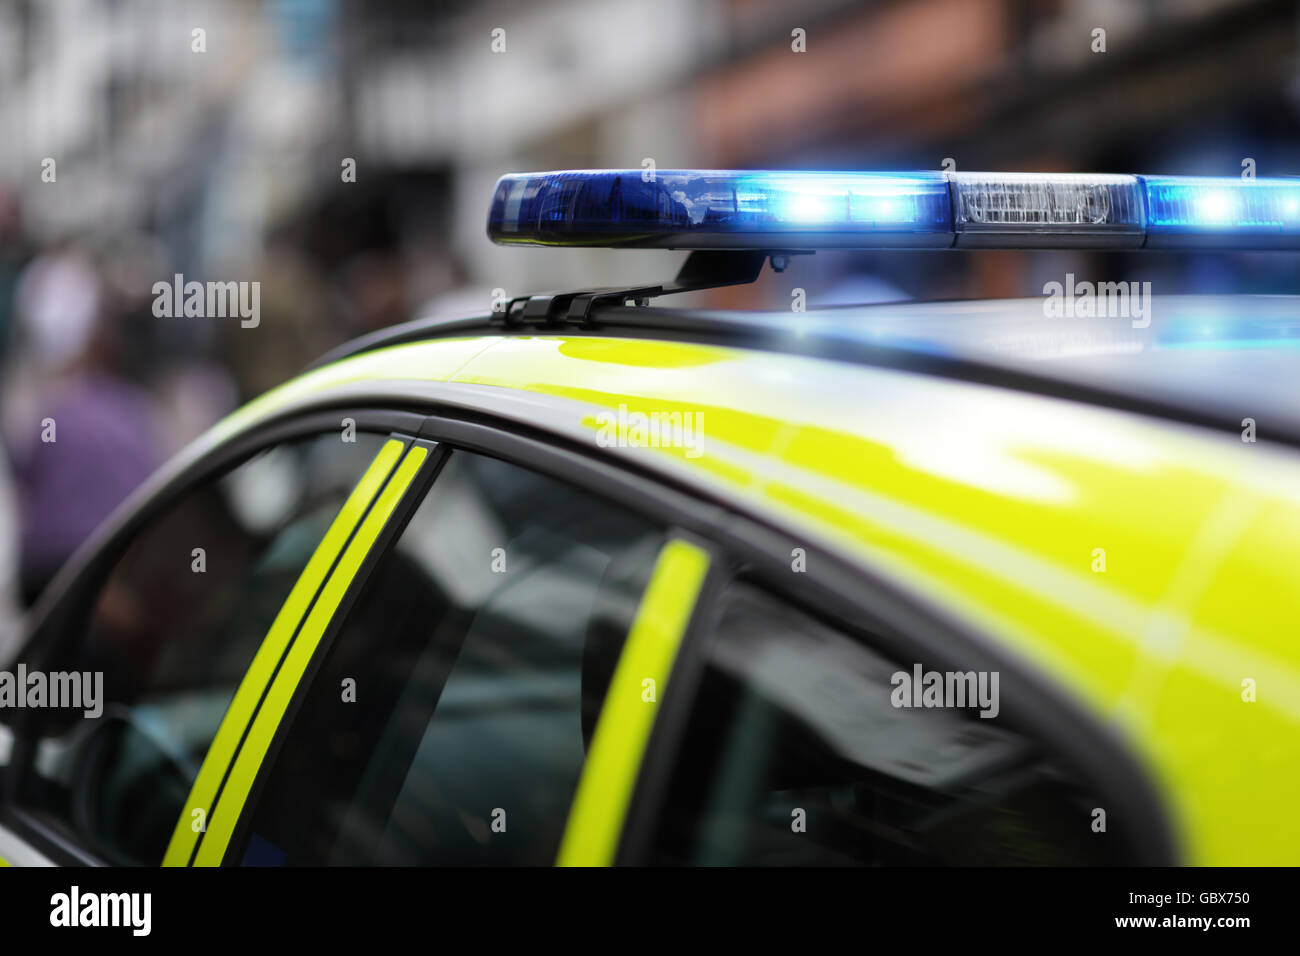 Polizeisirene blau Blaulicht bei Unfall oder Verbrechen-Szene  Stockfotografie - Alamy